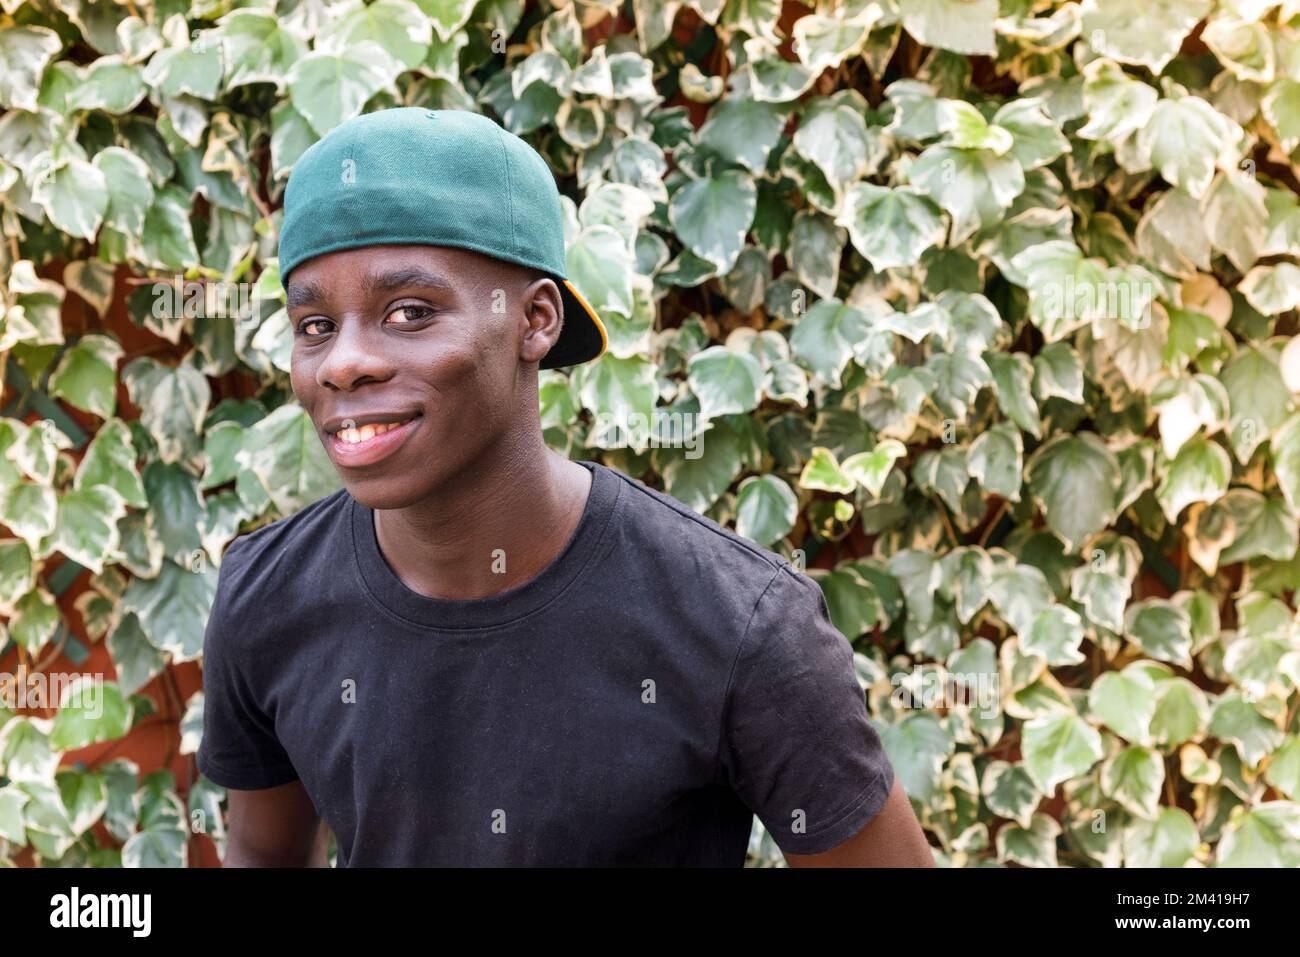 Felice afro americano maschio in t shirt e cappello guardando la macchina fotografica con sorriso vicino alle foglie verdi in giardino Foto Stock